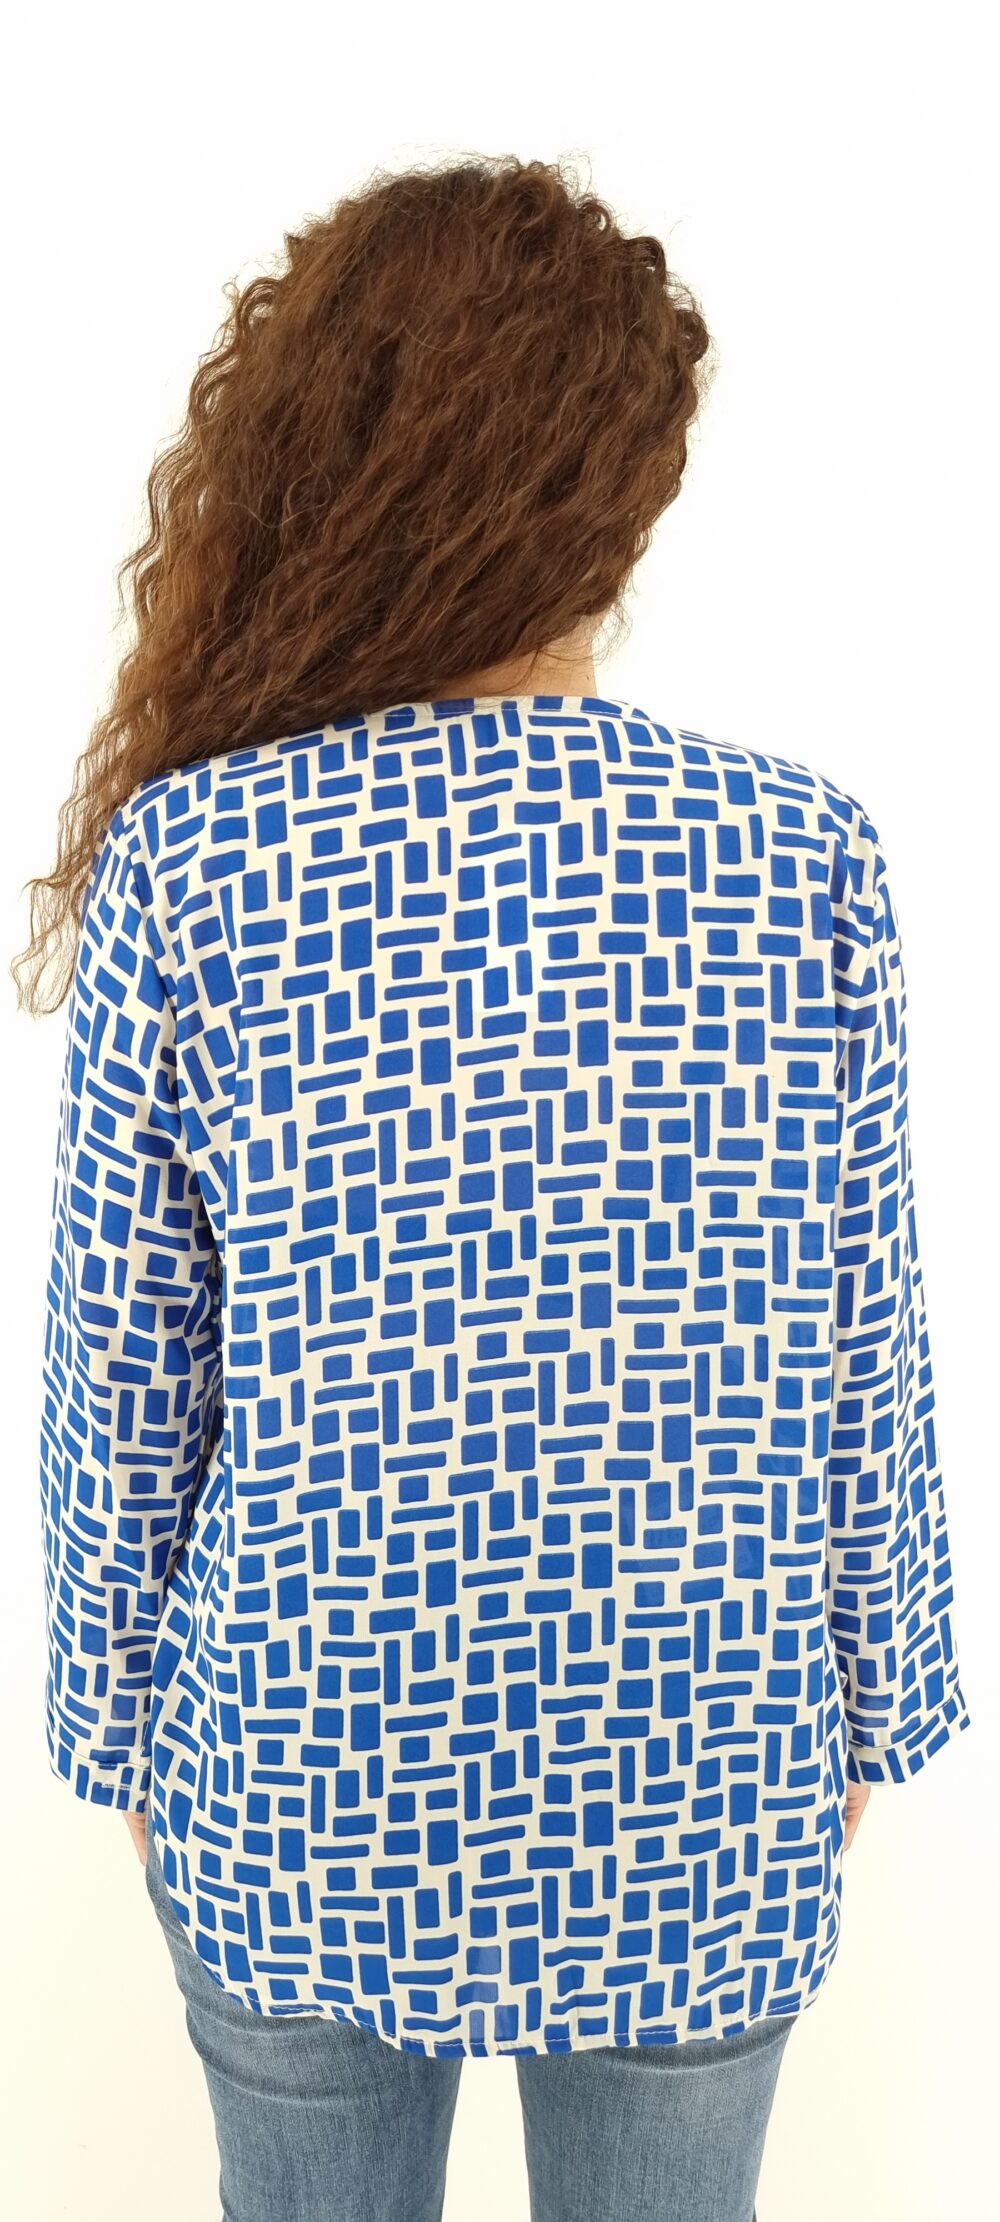 Μπλούζα με μοτίβο γεωμετρικά σχήματα και V λαιμόκοψη άσπρο μπλε